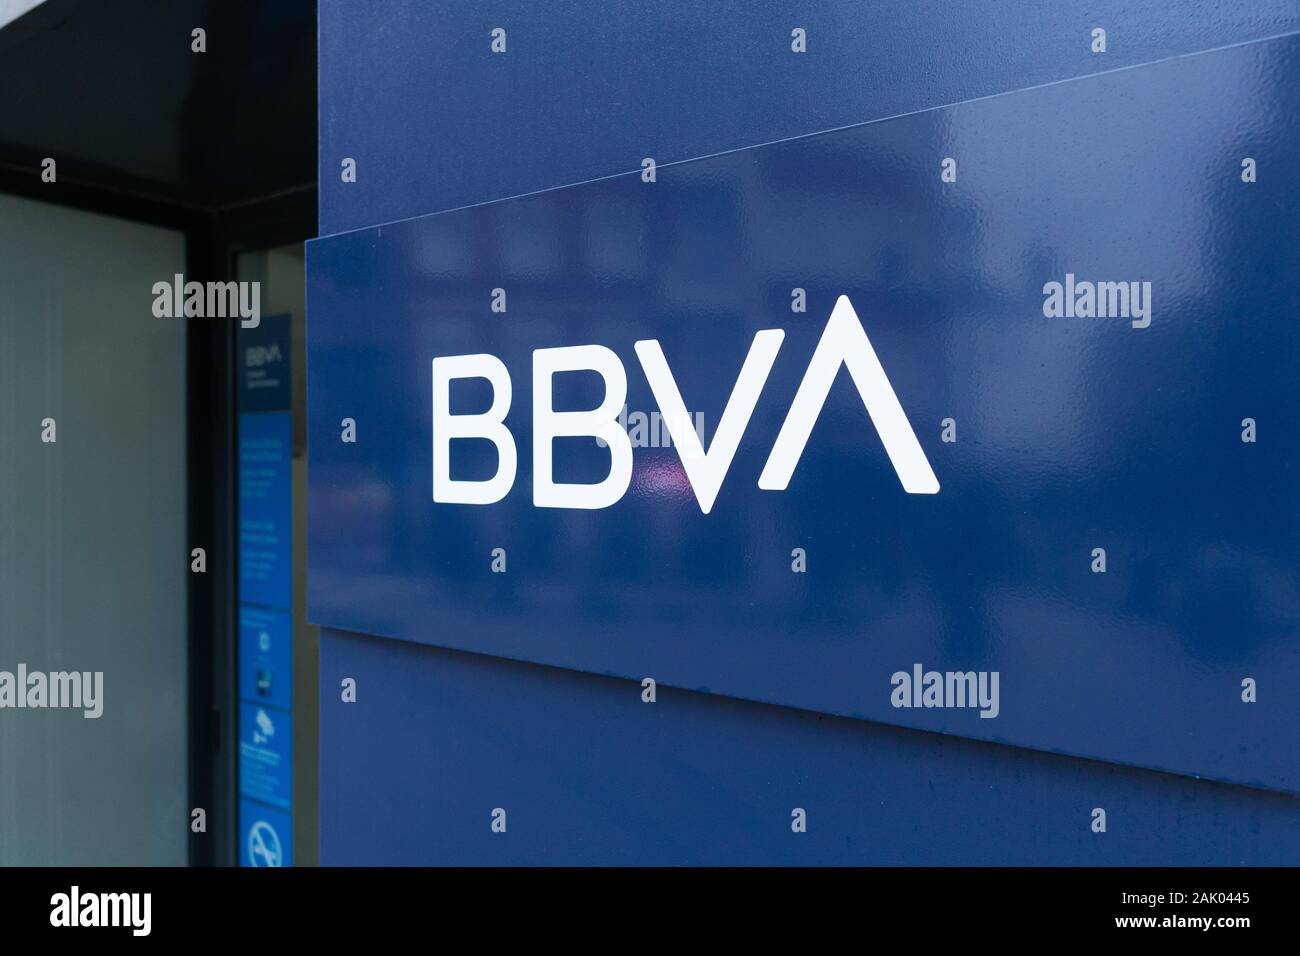 Bbva Bank Stockfotos Und Bilder Kaufen Alamy